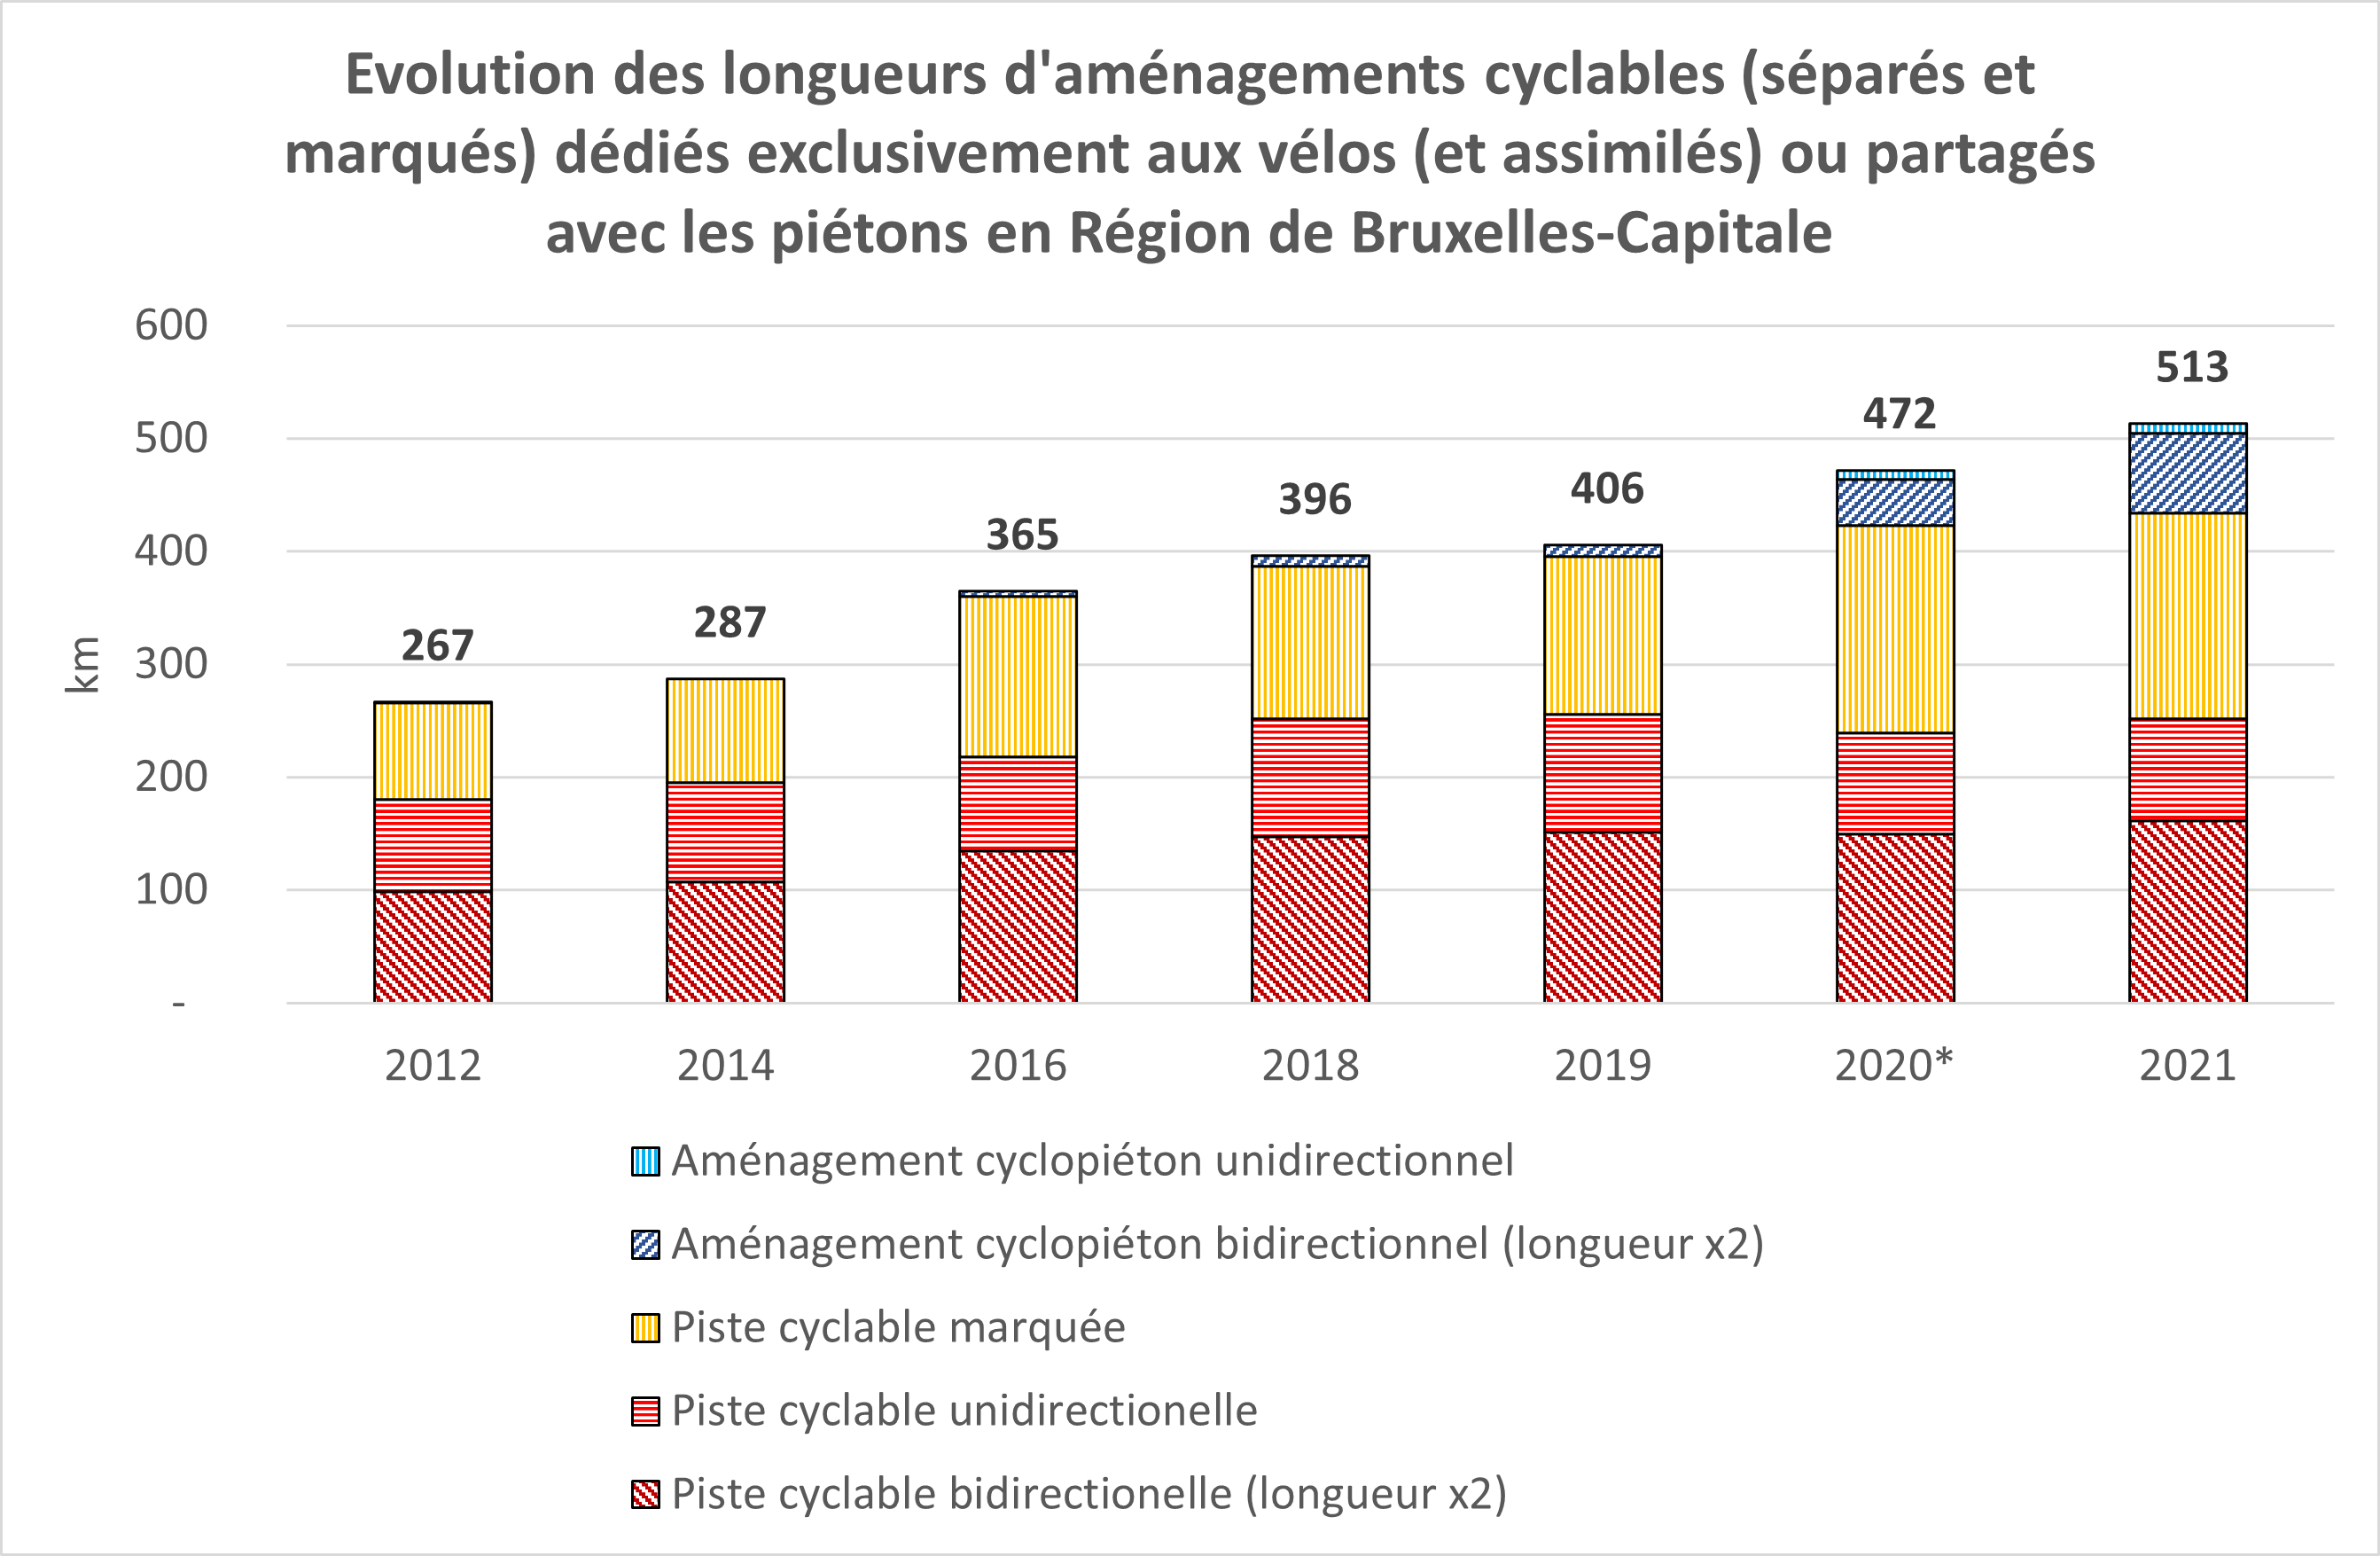 La Région de Bruxelles-Capitale compte environ 380 km d’aménagements cyclables marqués ou séparés dédiés exclusivement aux vélos (et assimilés : engins de déplacements, etc.) ou partagés avec des piétons (2020). La longueur de ces aménagements augmente d’année en année. En 2012, la Région comptabilisait moins de 250 km d’aménagements cyclables.